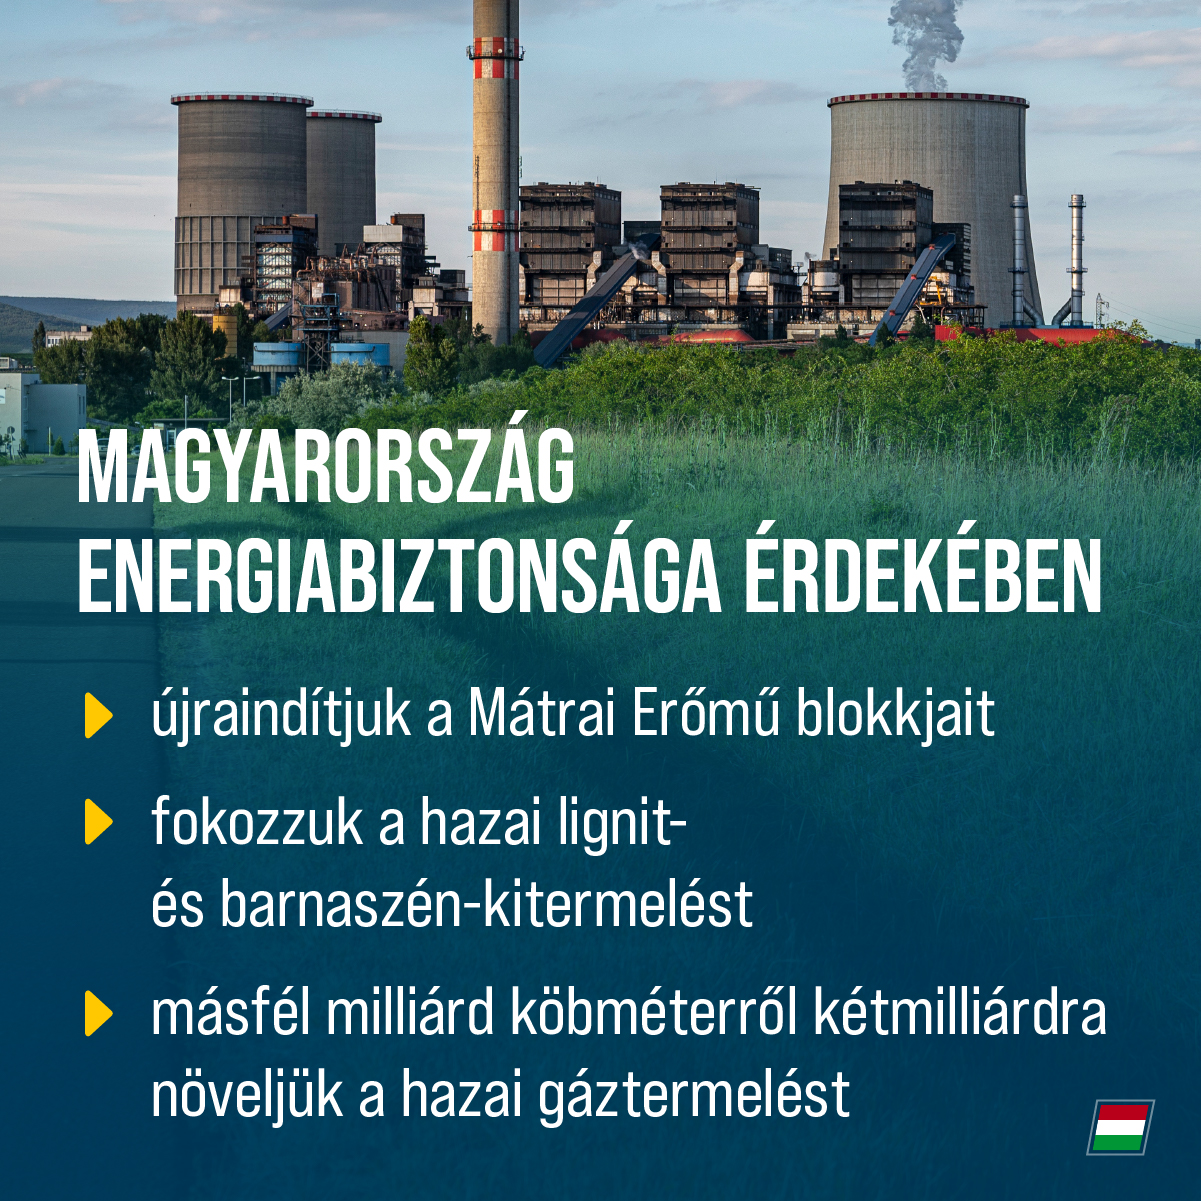 Az egész világra kiterjedő energiaválság miatt a legfontosabb feladatunk, hogy gondoskodjunk Magyarország energiabiztonságáról.